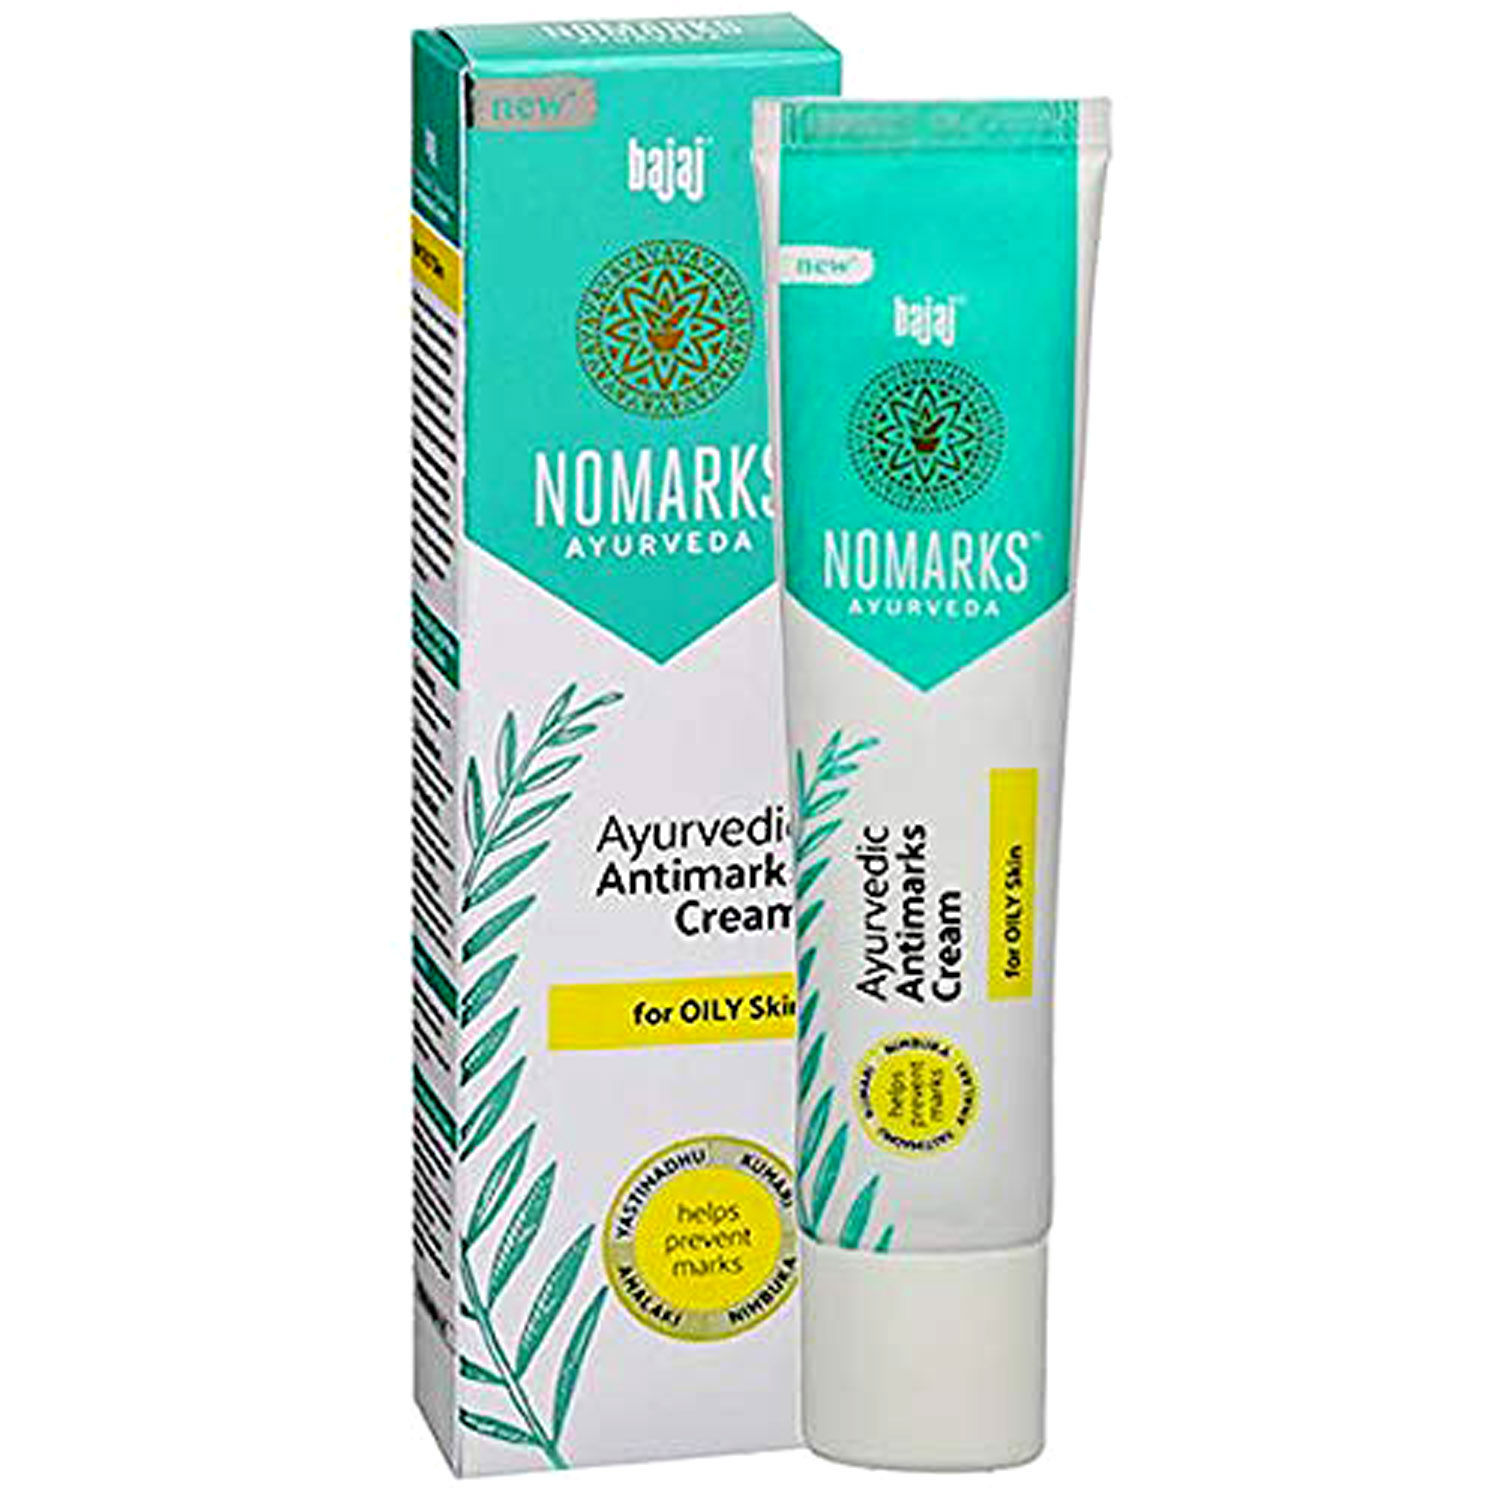 Buy Nomarks Ayurvedic Antimarks Cream For Oily Skin, 25 gm Online